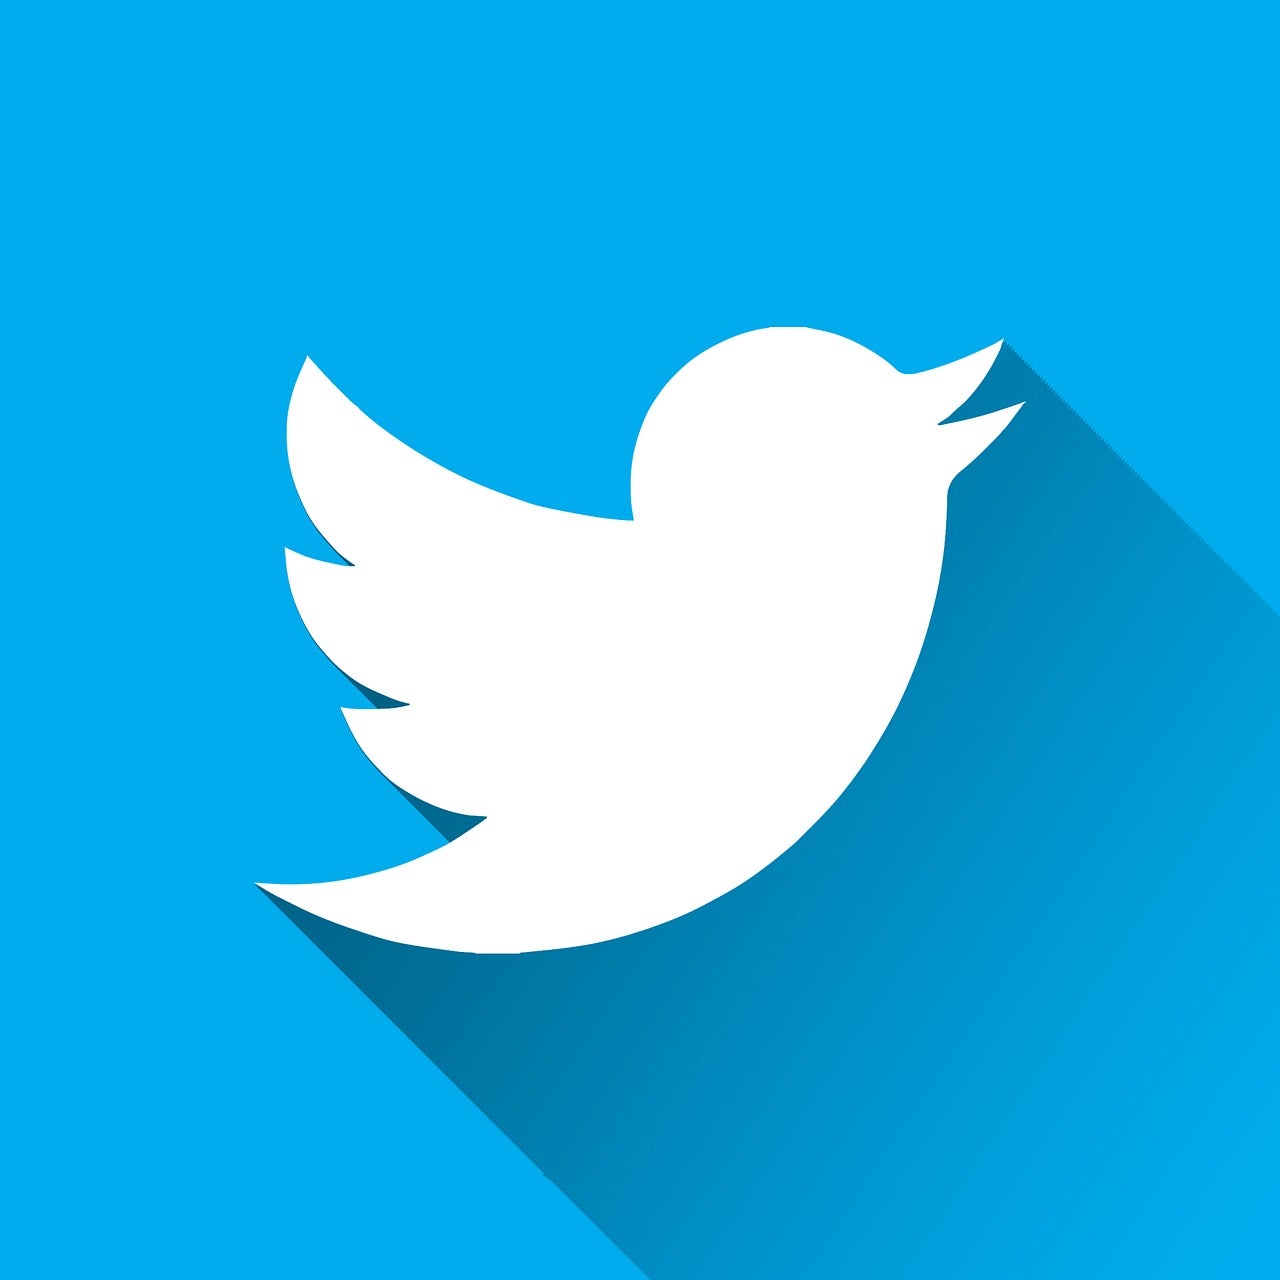 推特开发者账号购买 | 信息充实的专业指南